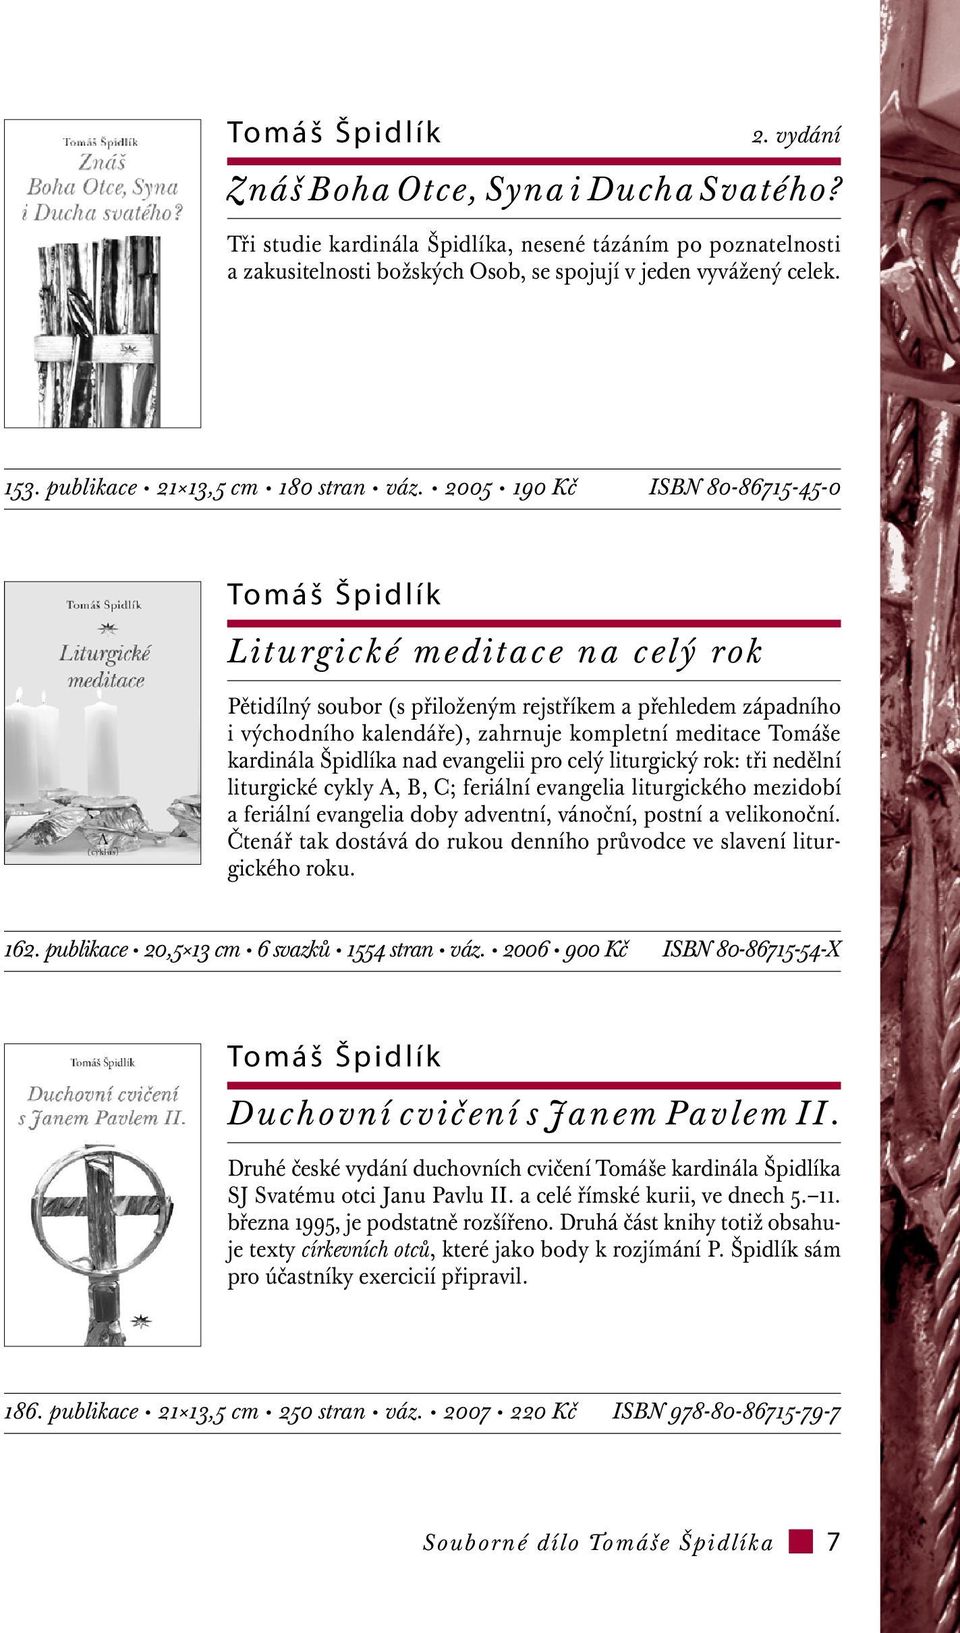 2005 190 Kč ISBN 80-86715-45-0 Tomáš Špidlík Liturgické meditace na celý rok Pětidílný soubor (s přiloženým rejstříkem a přehledem západního i východního kalendáře), zahrnuje kompletní meditace